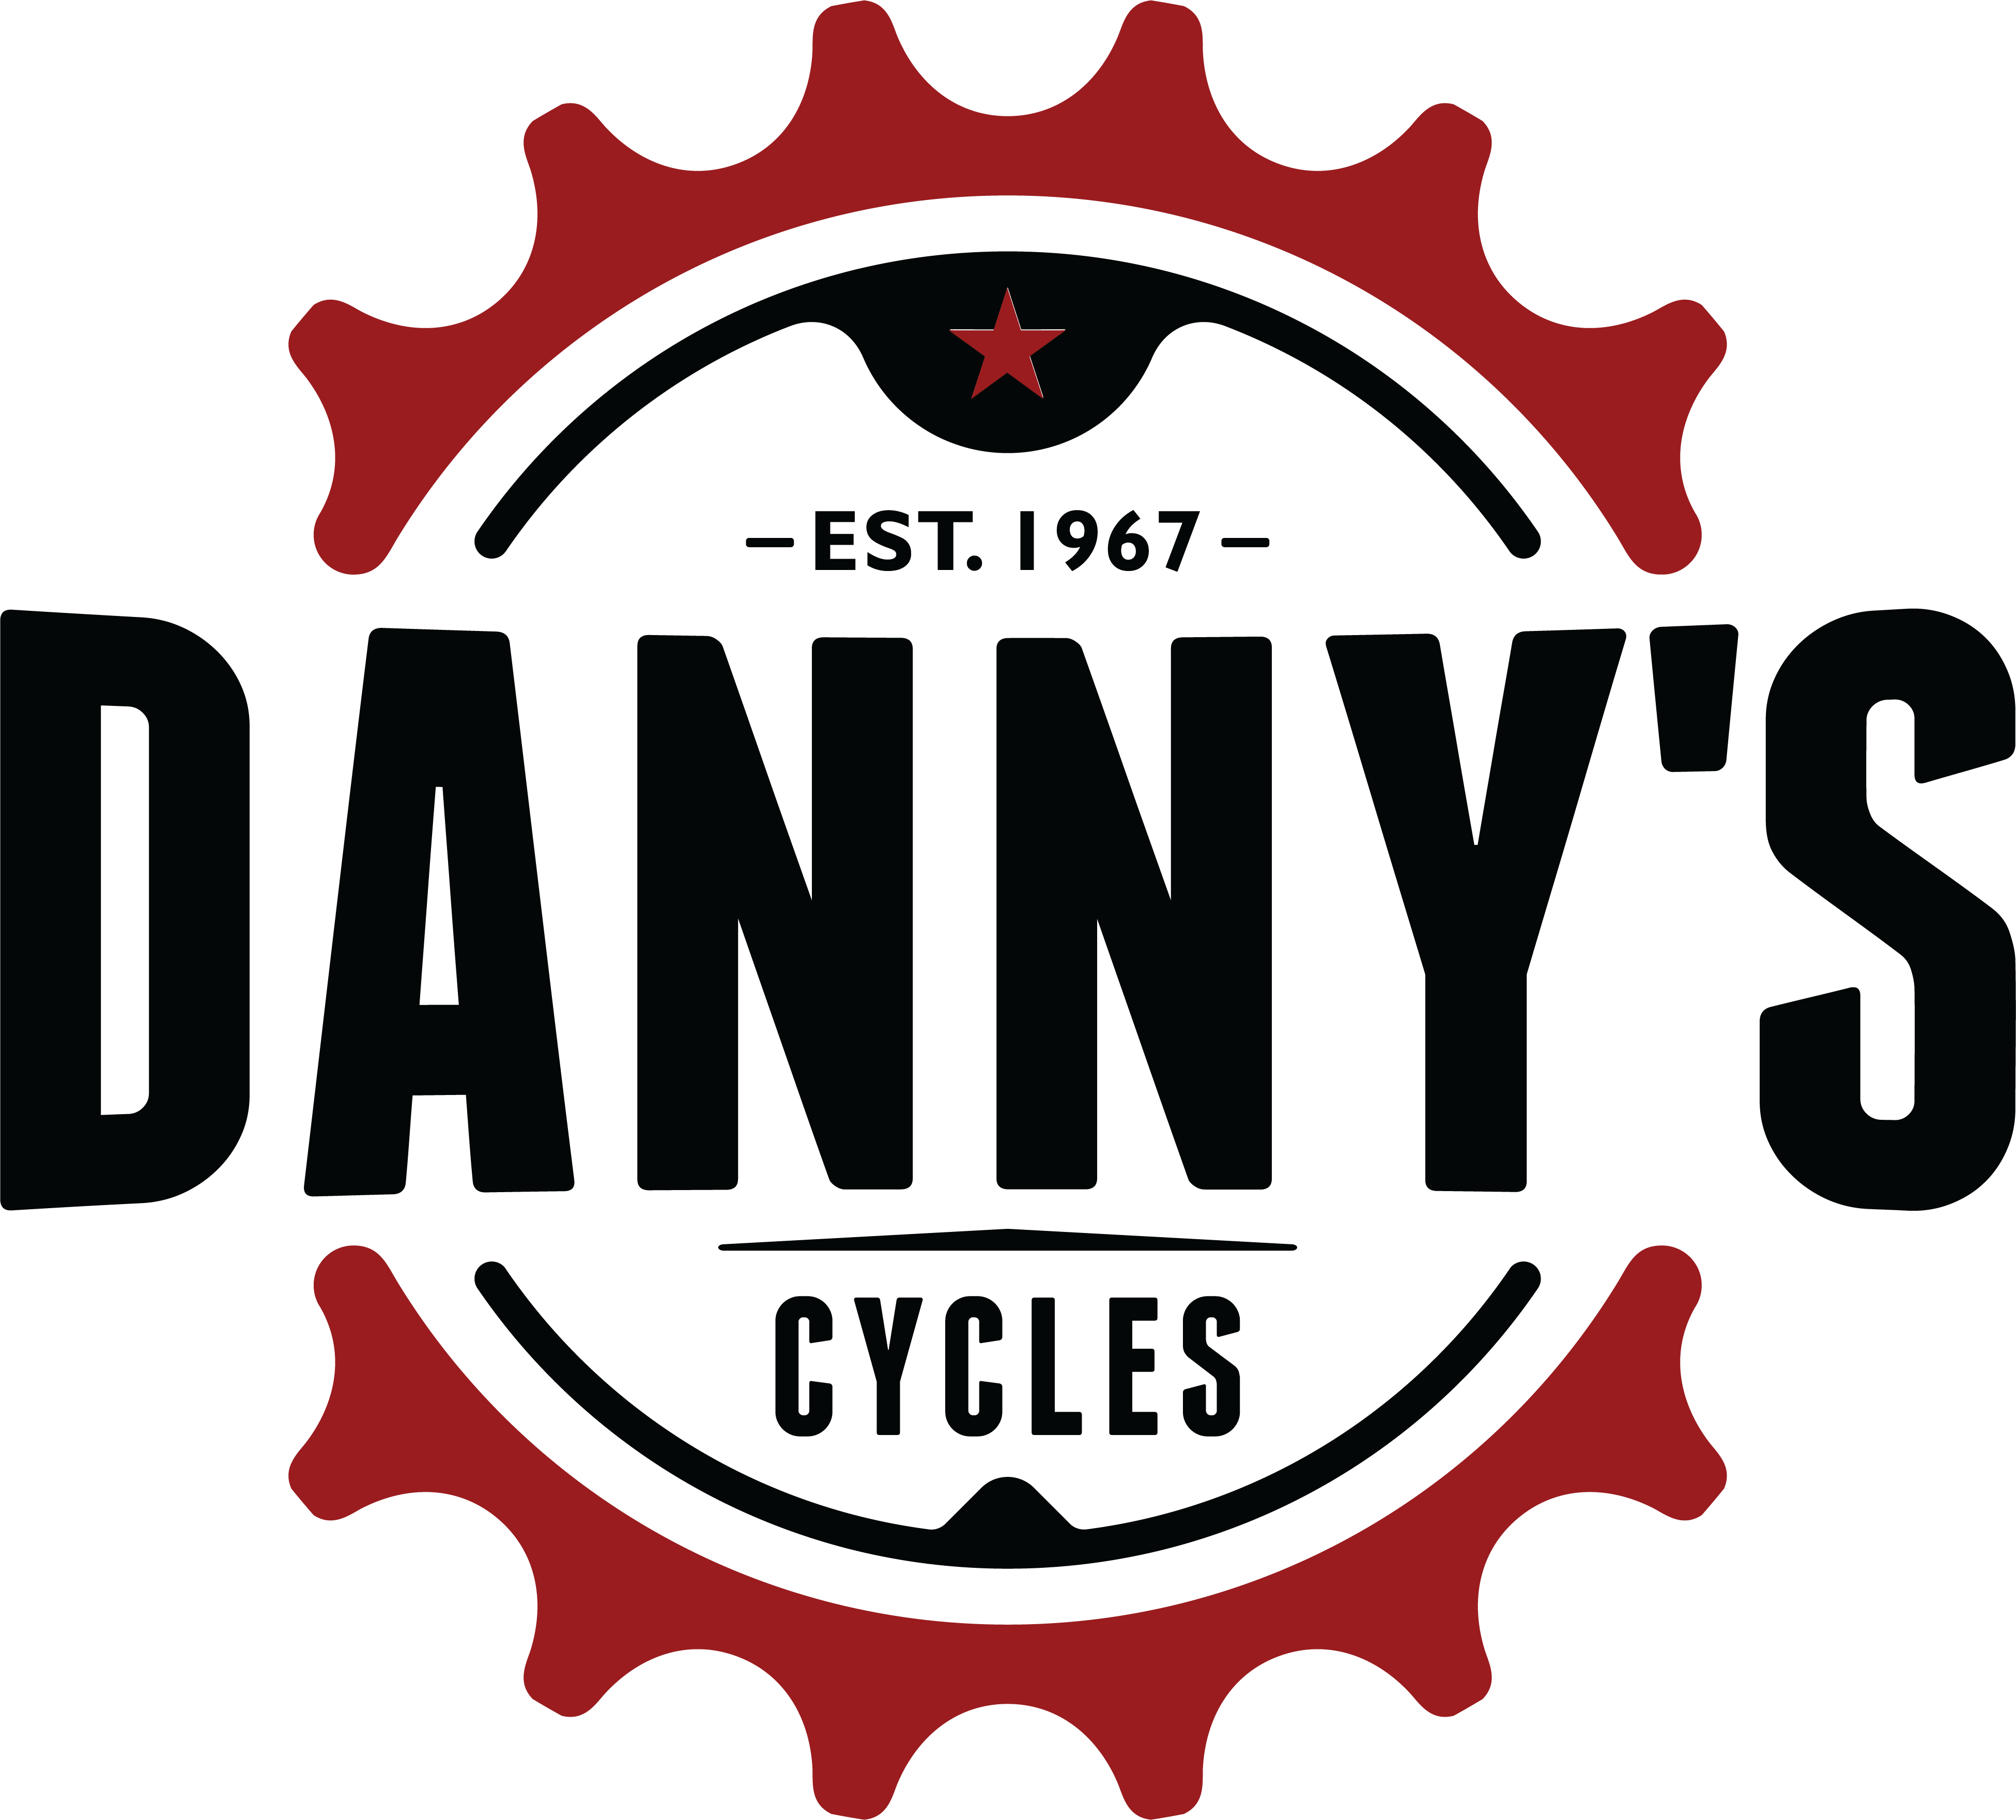 Danny's Cycles logo - Est. 1967